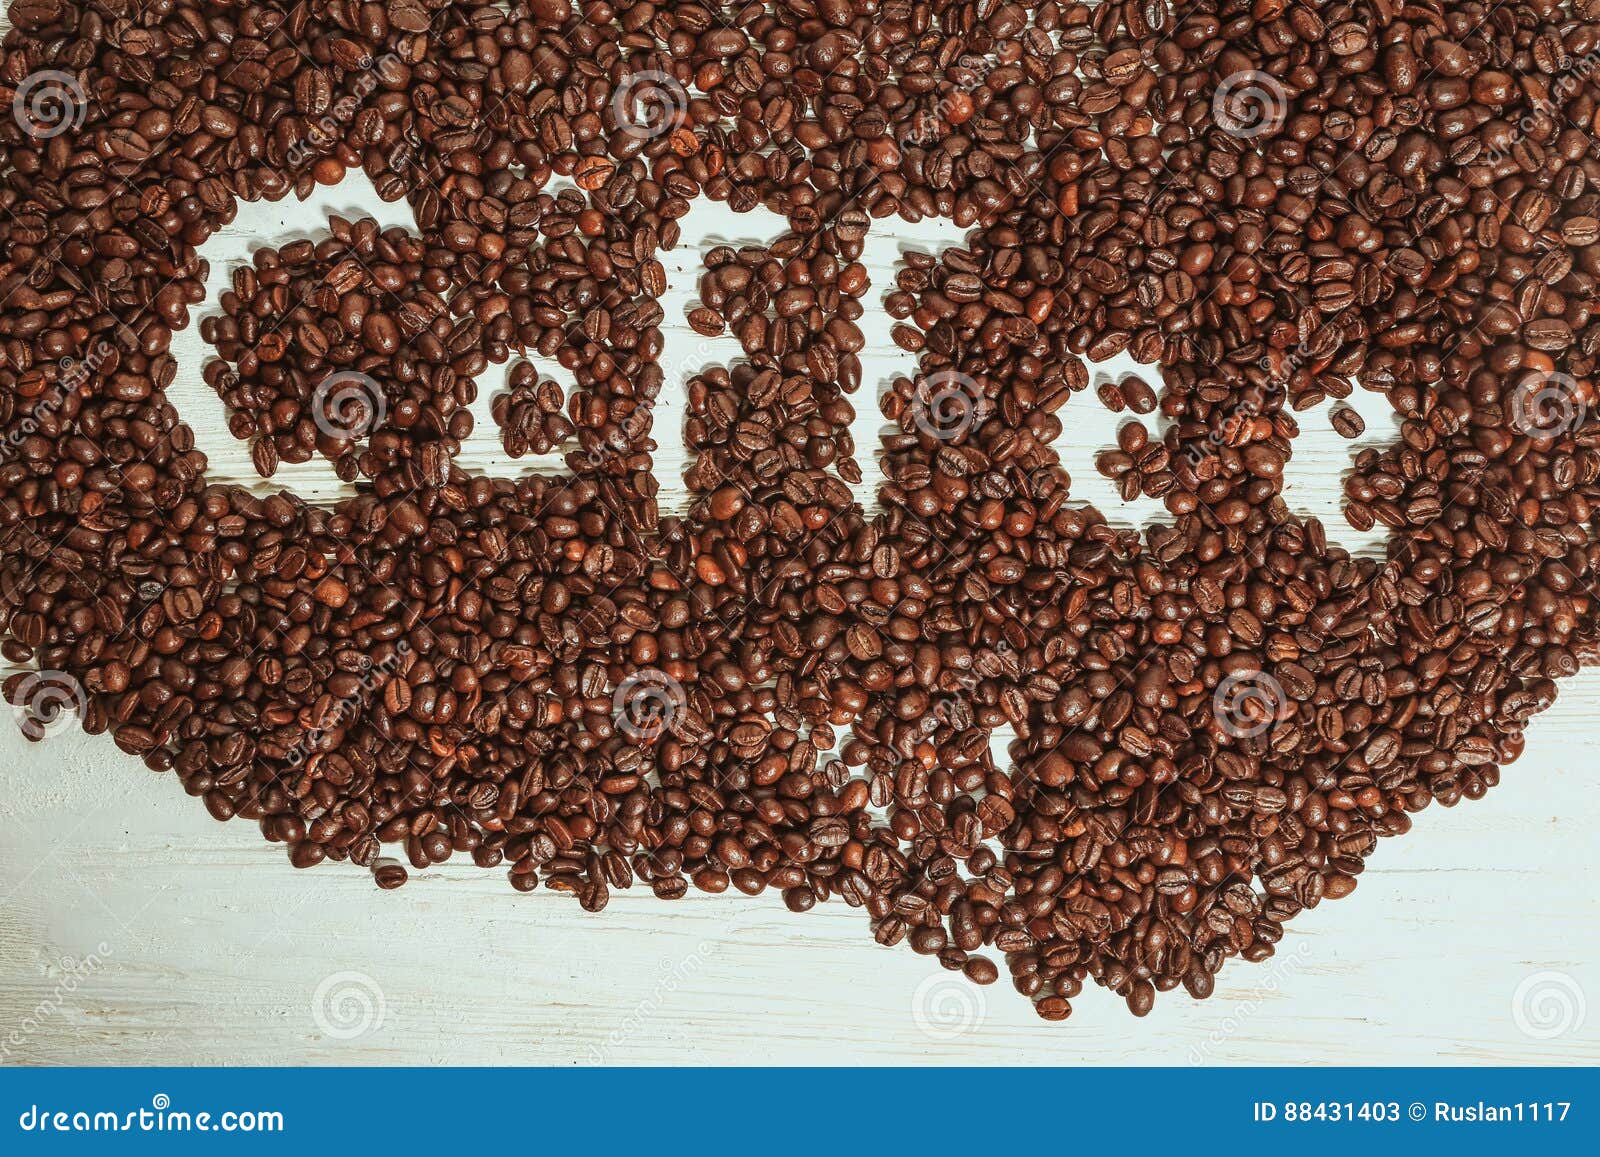 Молю кофе или мелю кофе. Кофе пишется. Как пишется слово кофе. Кофе прописгными слово. Написать слово кофе из кофе.